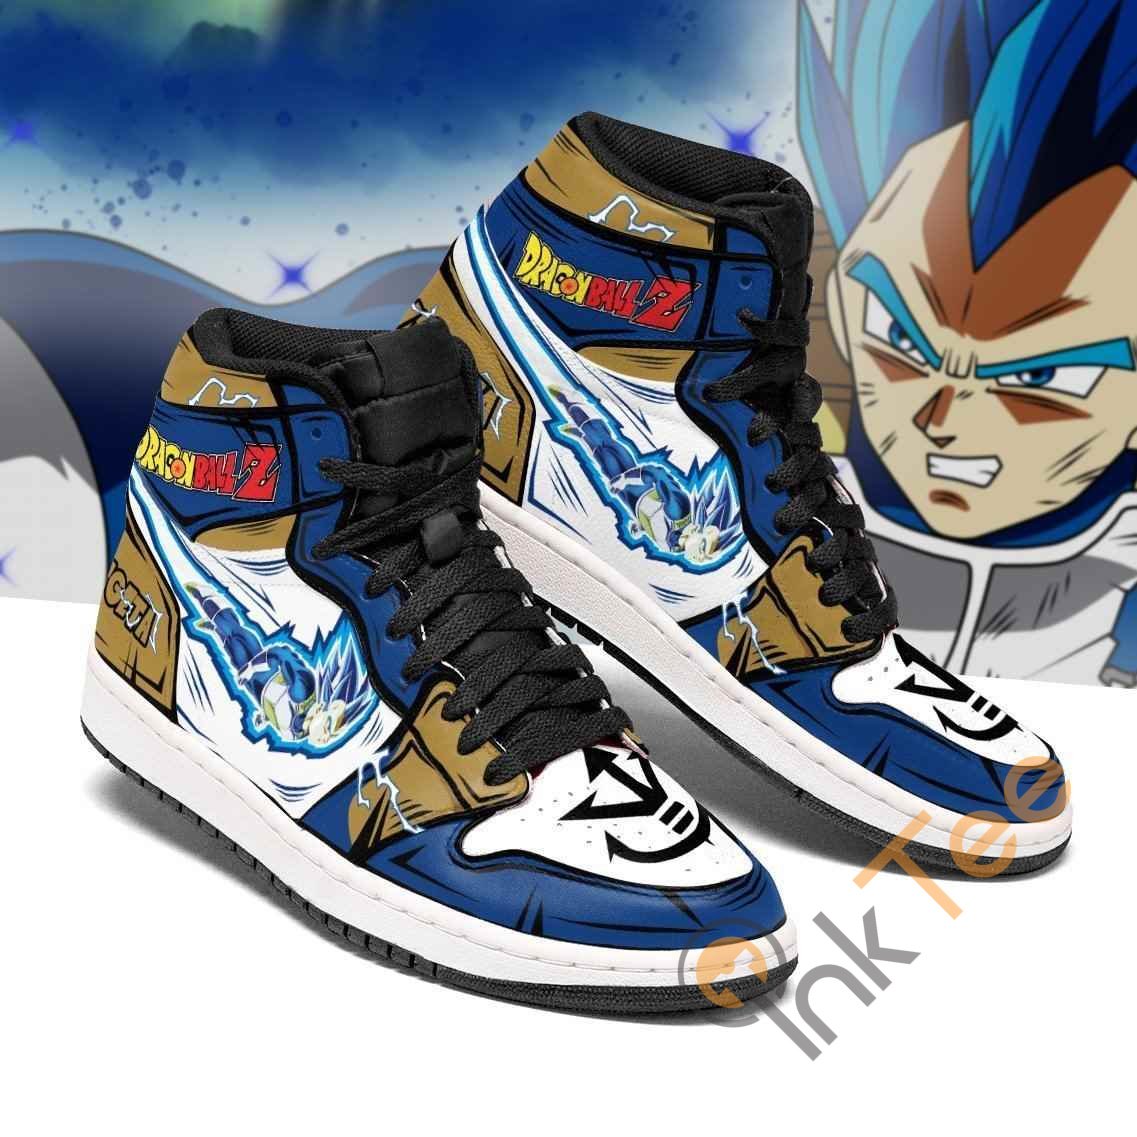 Vegeta Blue Dragon Ball Z Anime Sneakers Air Jordan Shoes